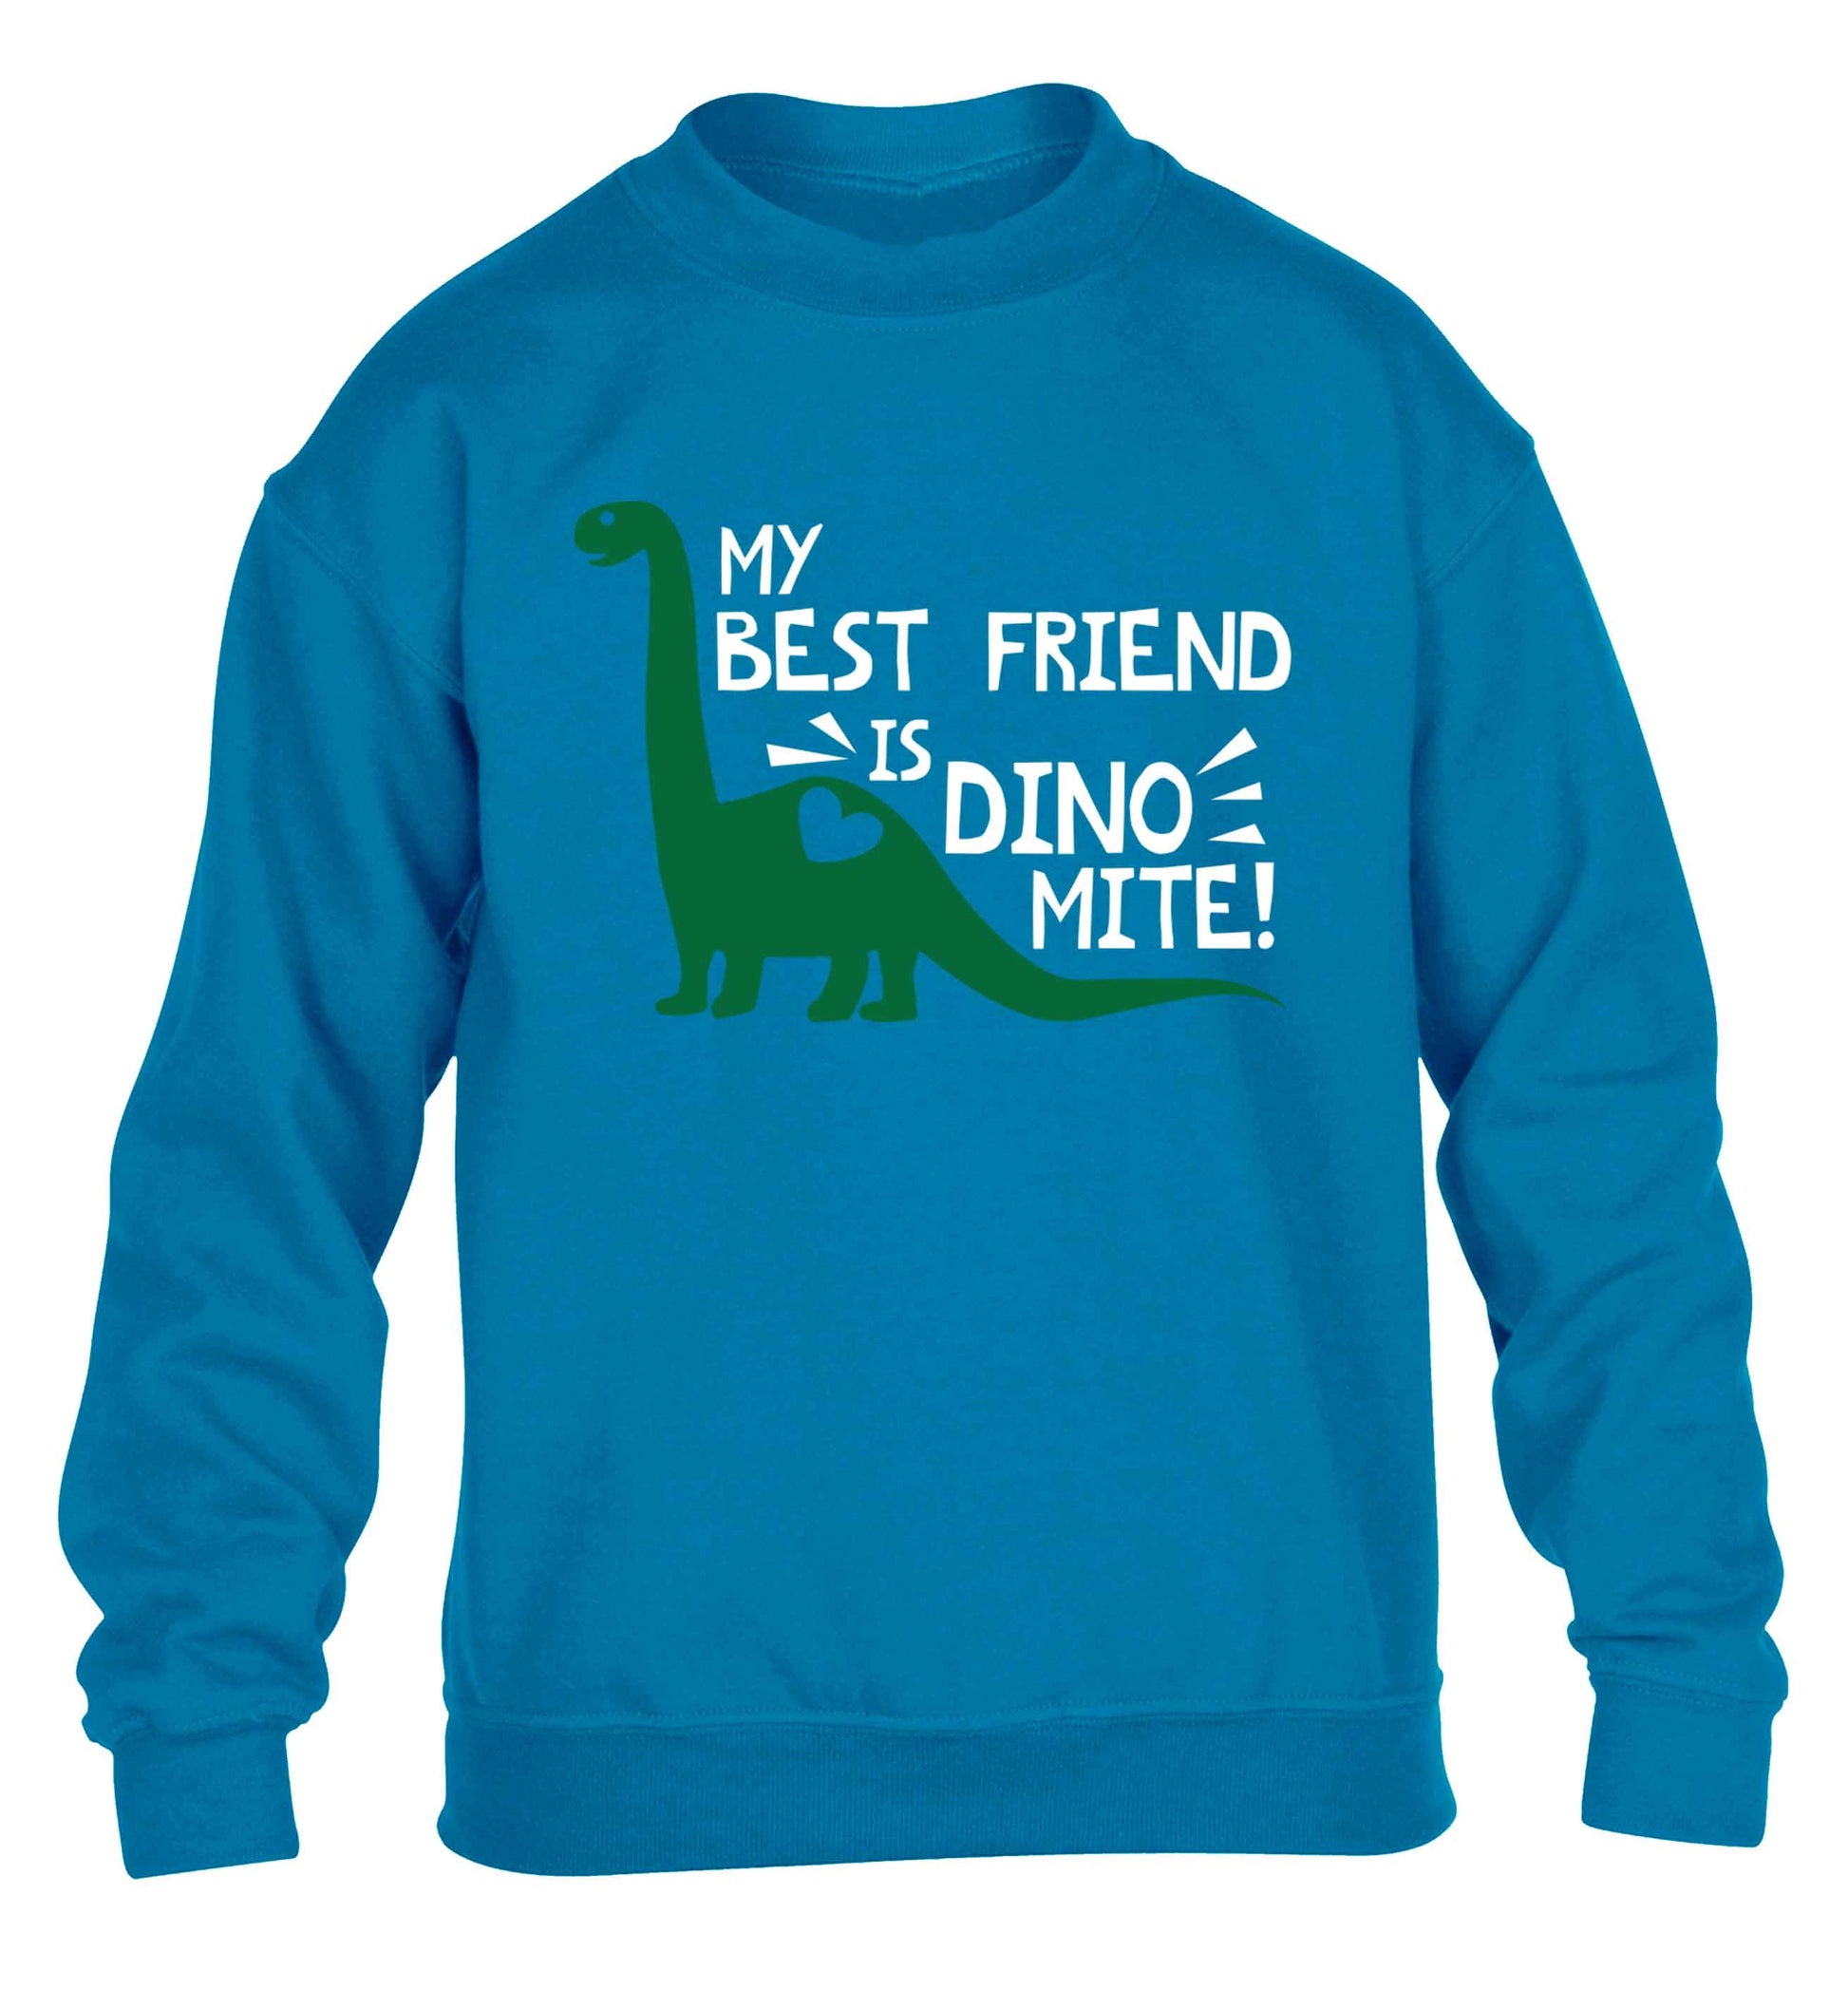 My best friend is dinomite! children's blue sweater 12-13 Years